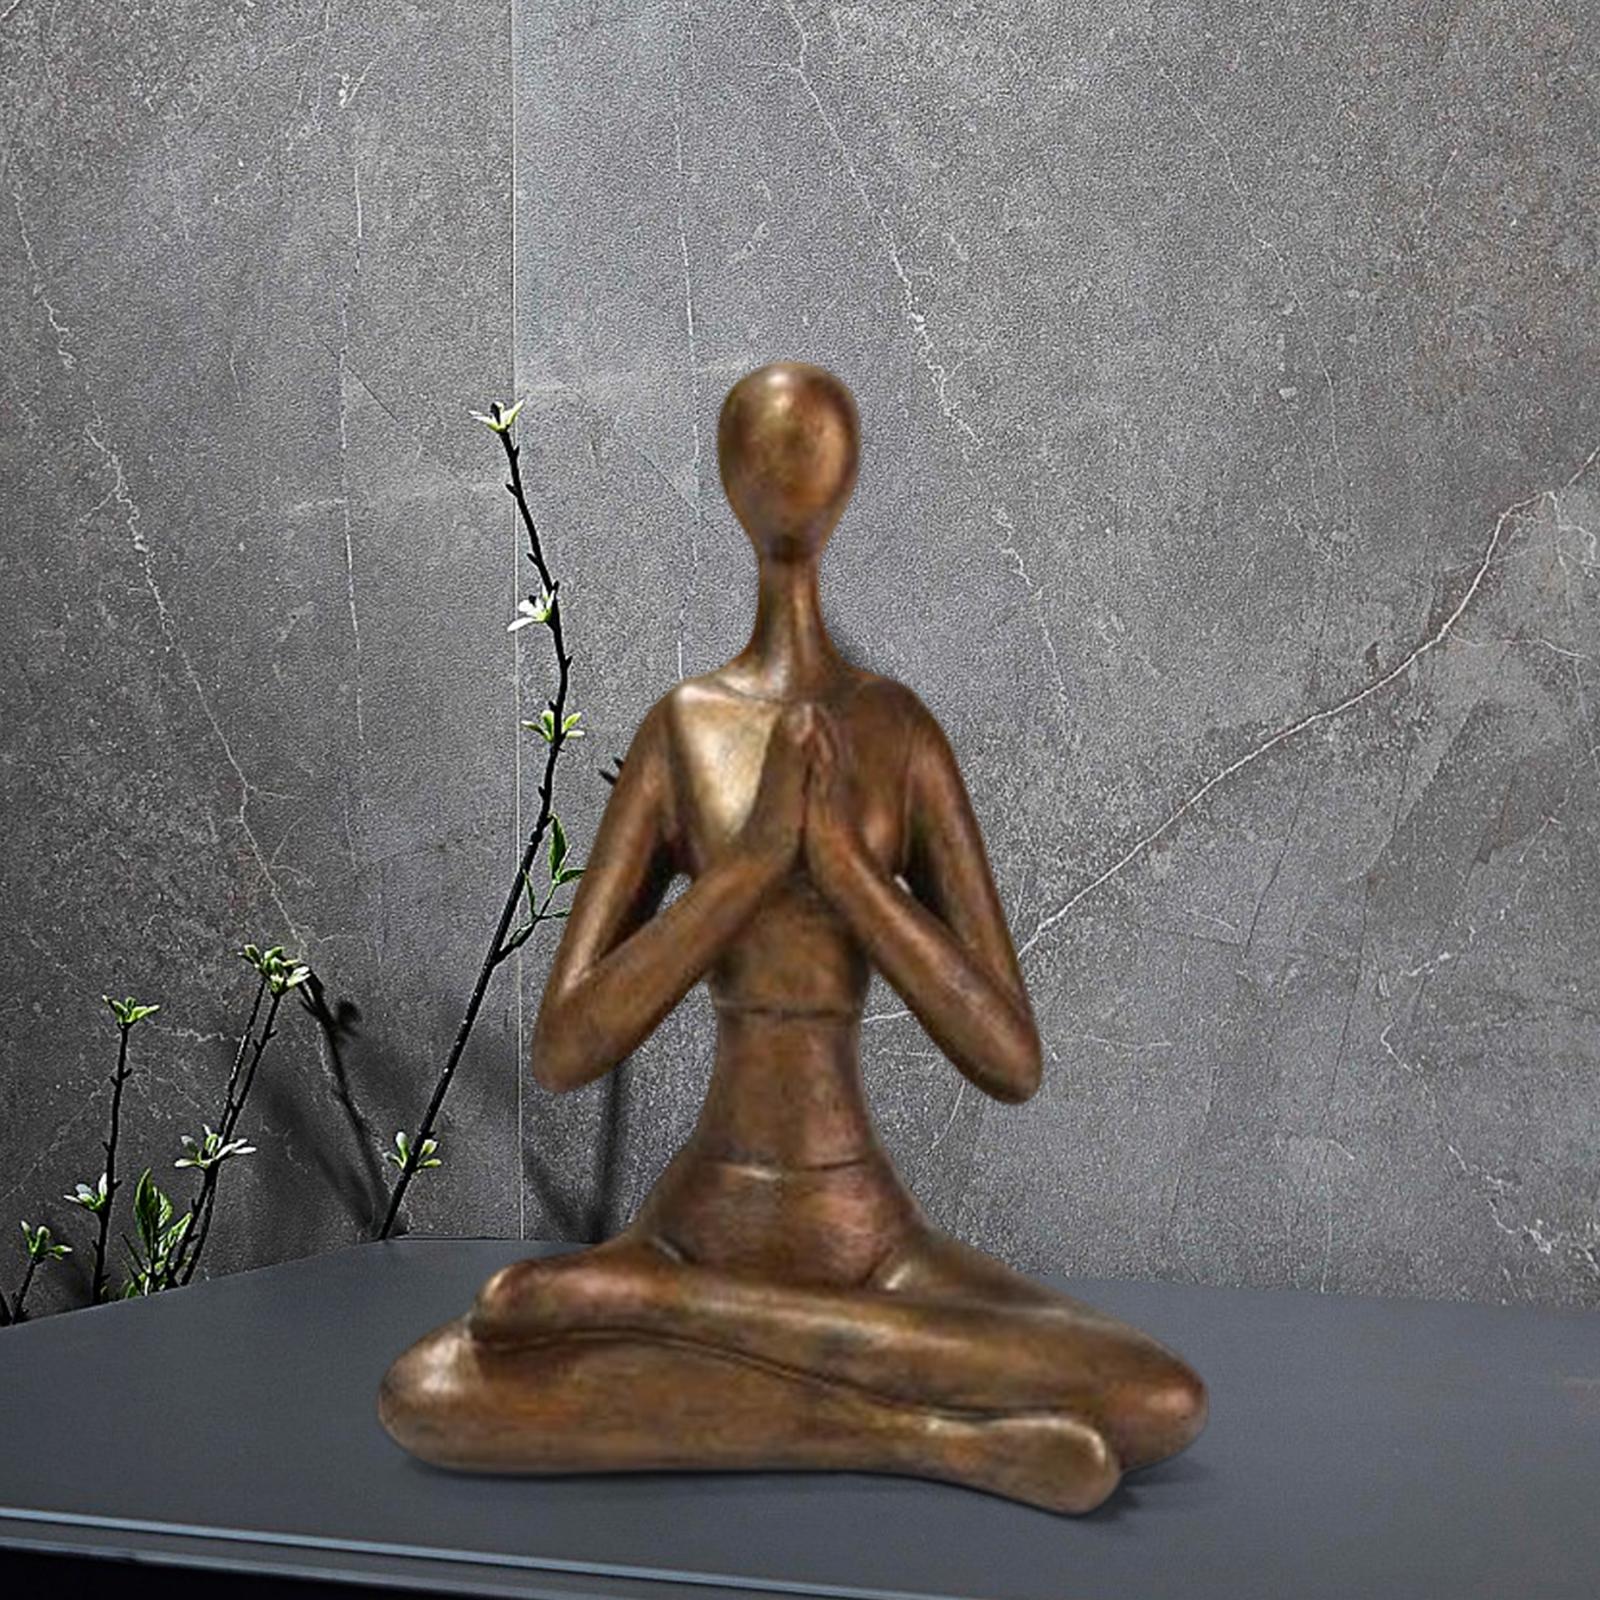 Meditation Yoga Pose Statue Arts Crafts for Desktop Decor Hands on Chest